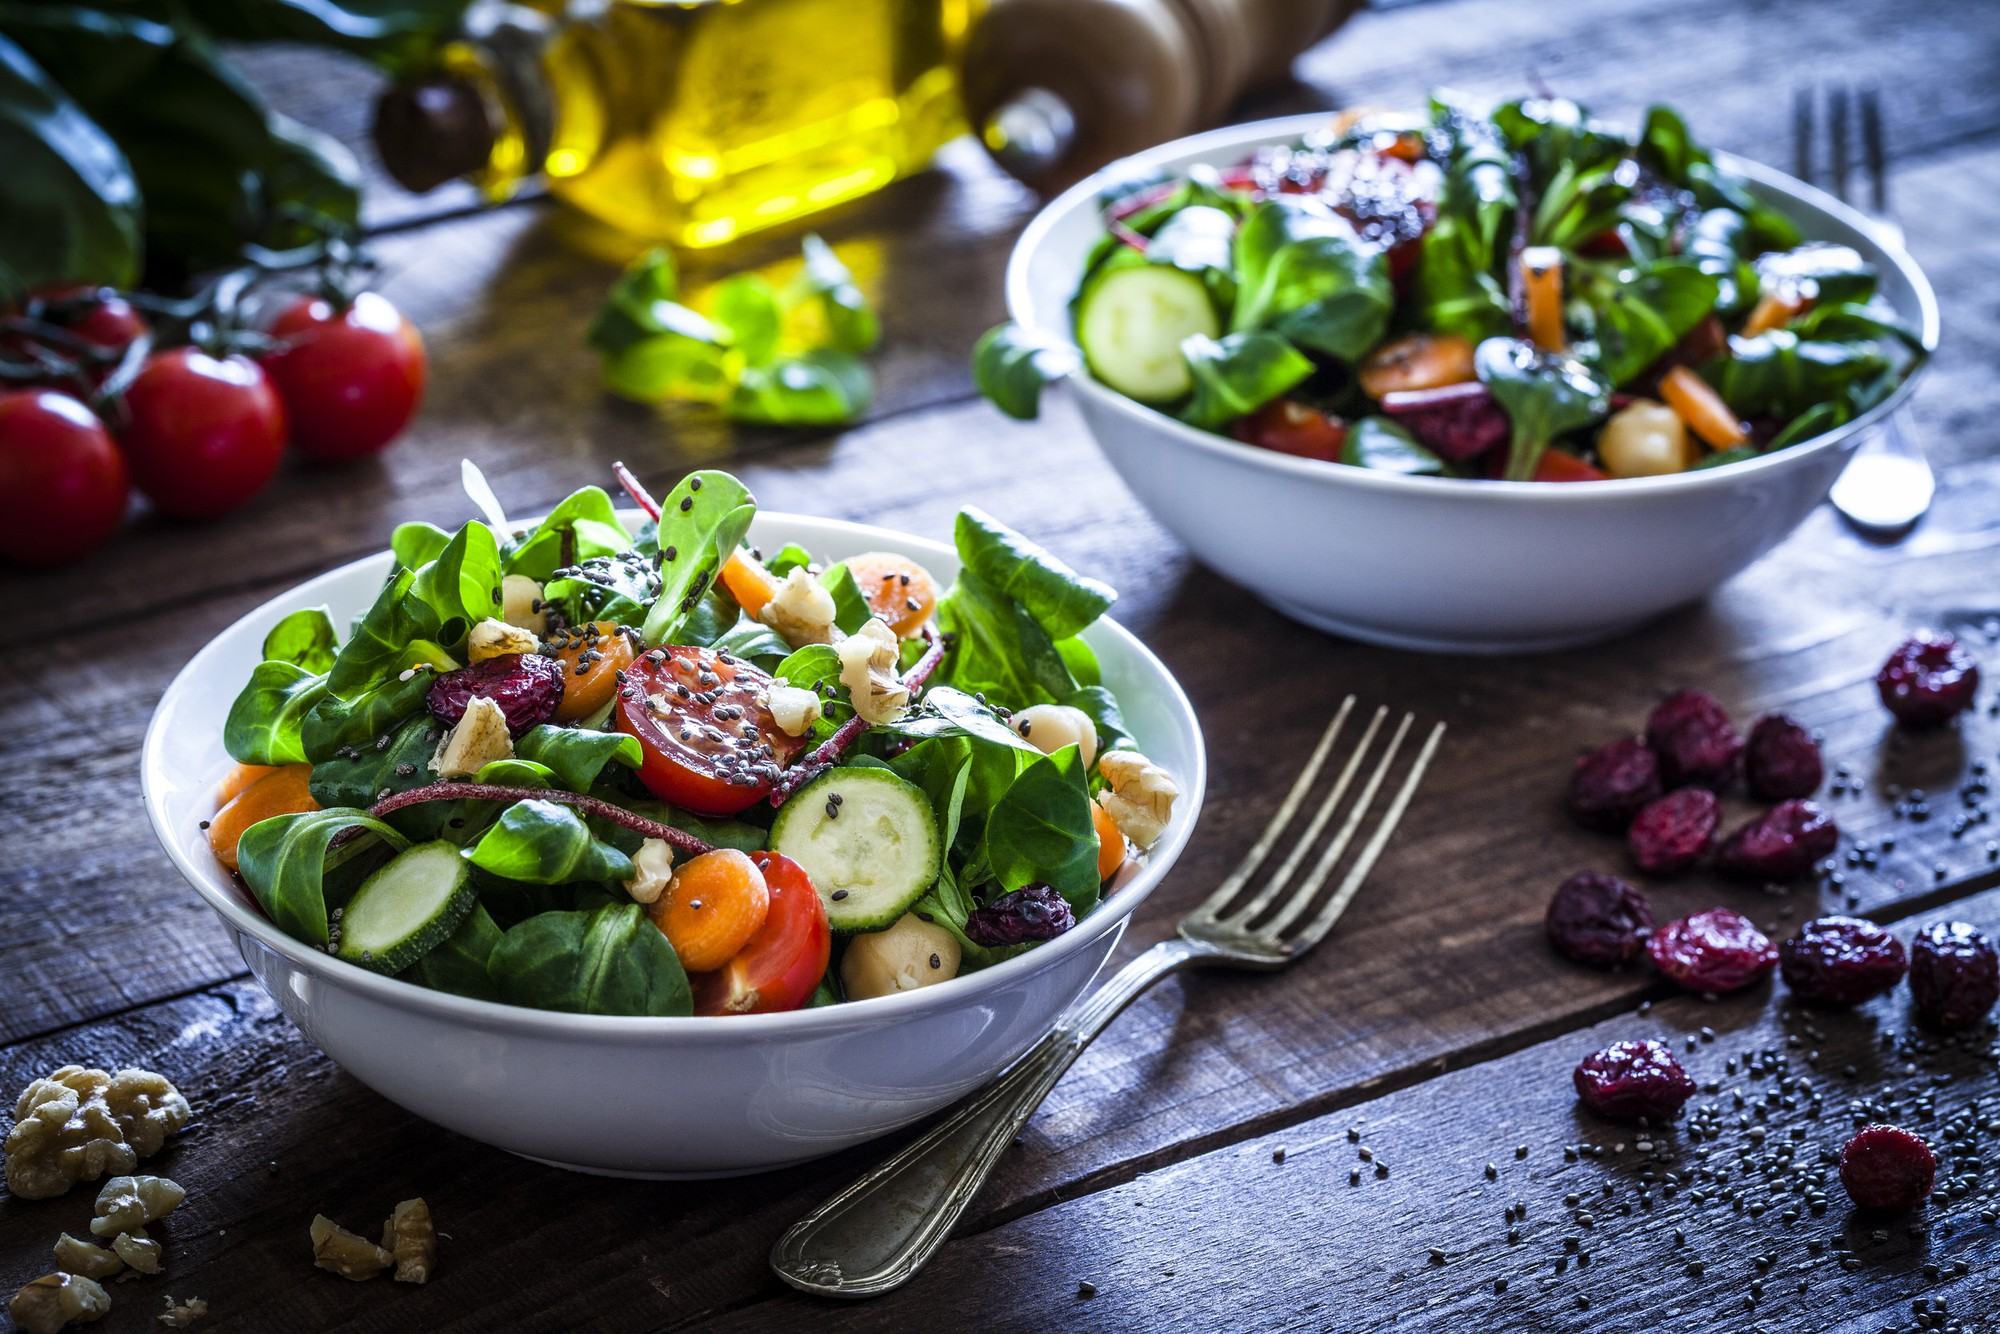 Những thực phẩm nên và không nên sử dụng làm món salad trong giai đoạn Detox thay thế các bữa ăn hoàn toàn - Ảnh 2.